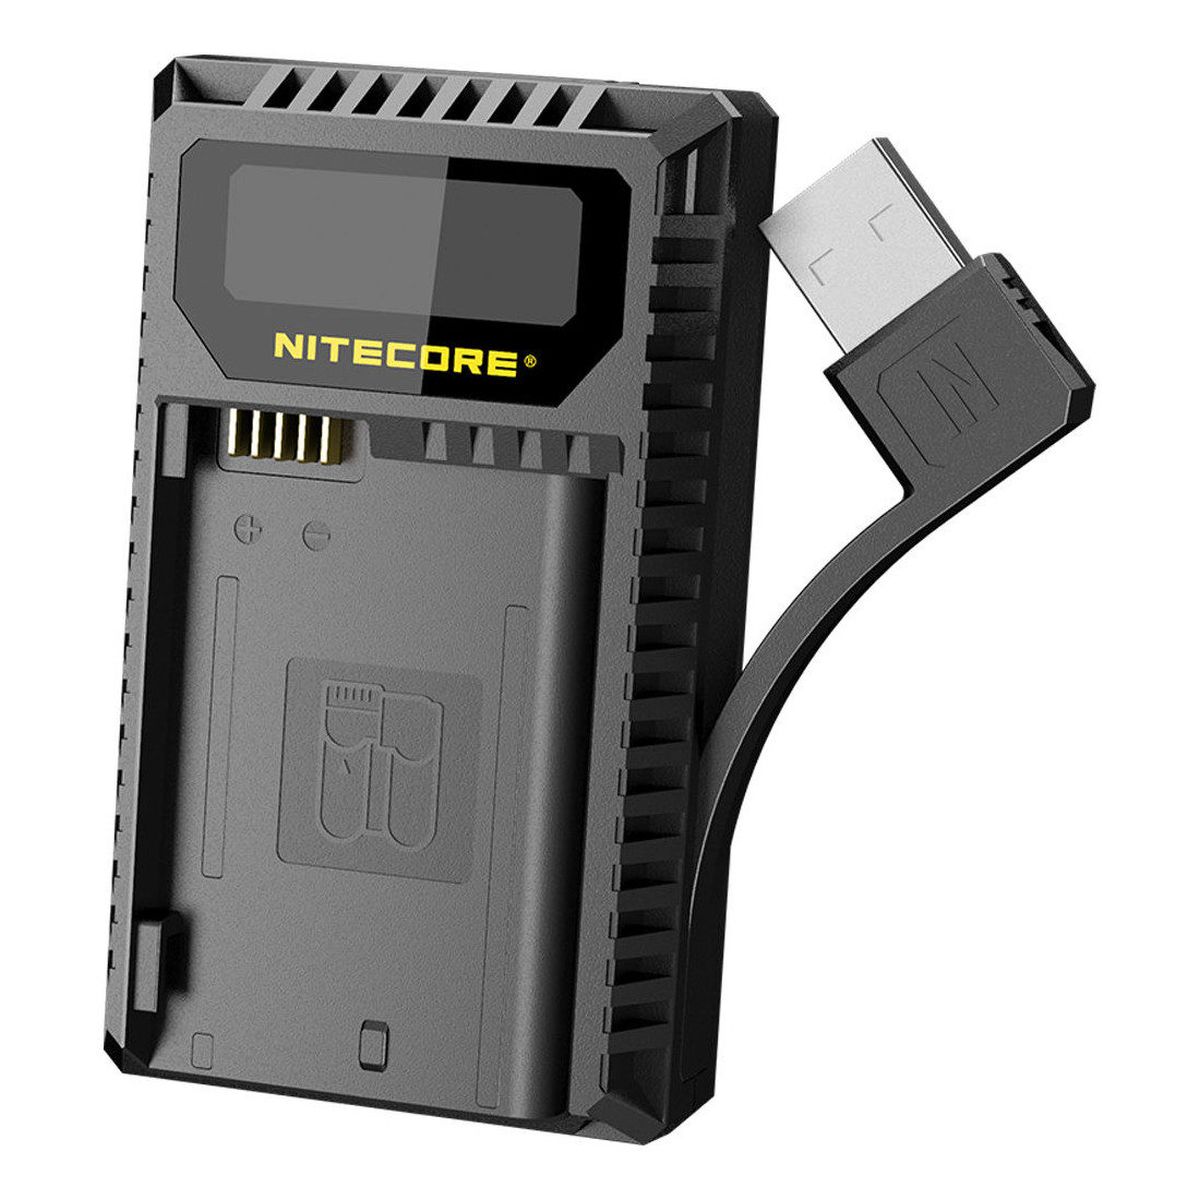 Nitecore UNK2 Kompaktes Doppelladegerät für Nikon EN-EL15 + USB